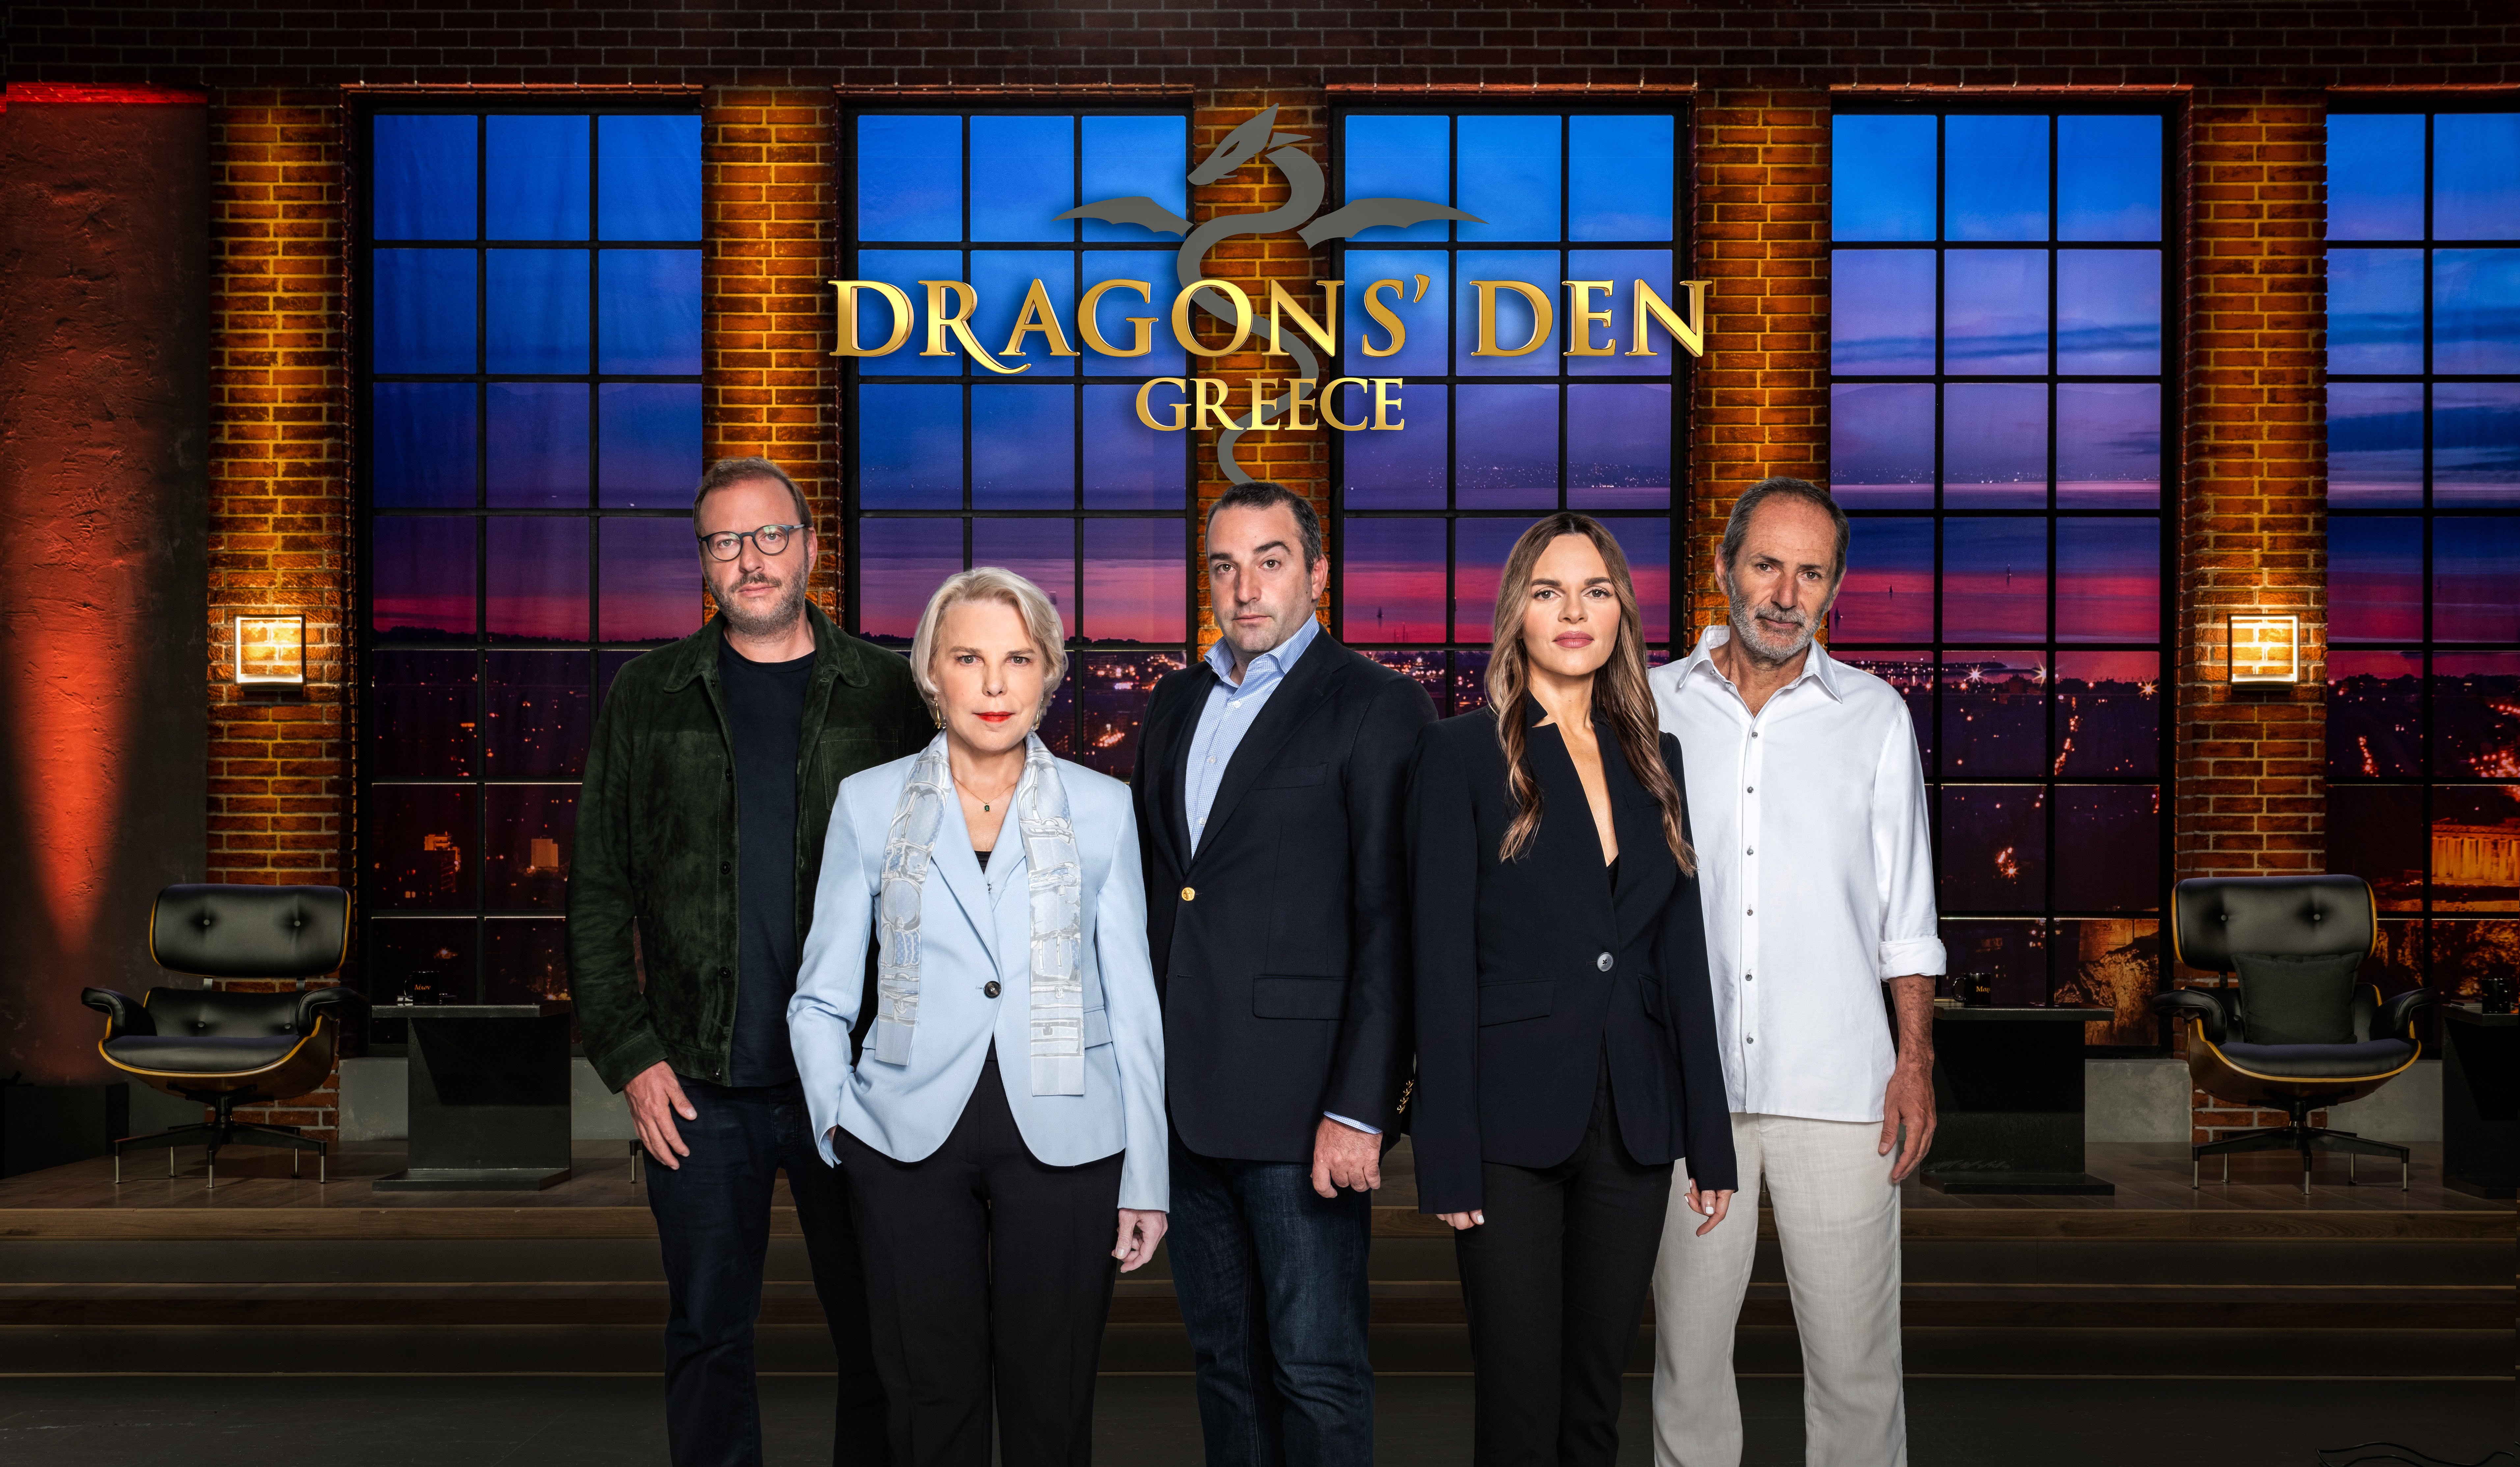 Dragons’ Den: Το πιο επιτυχημένο τηλεοπτικό show επενδύσεων και επιχειρηματικότητας, έρχεται απόψε στον ΑΝΤ1 στις 22:00